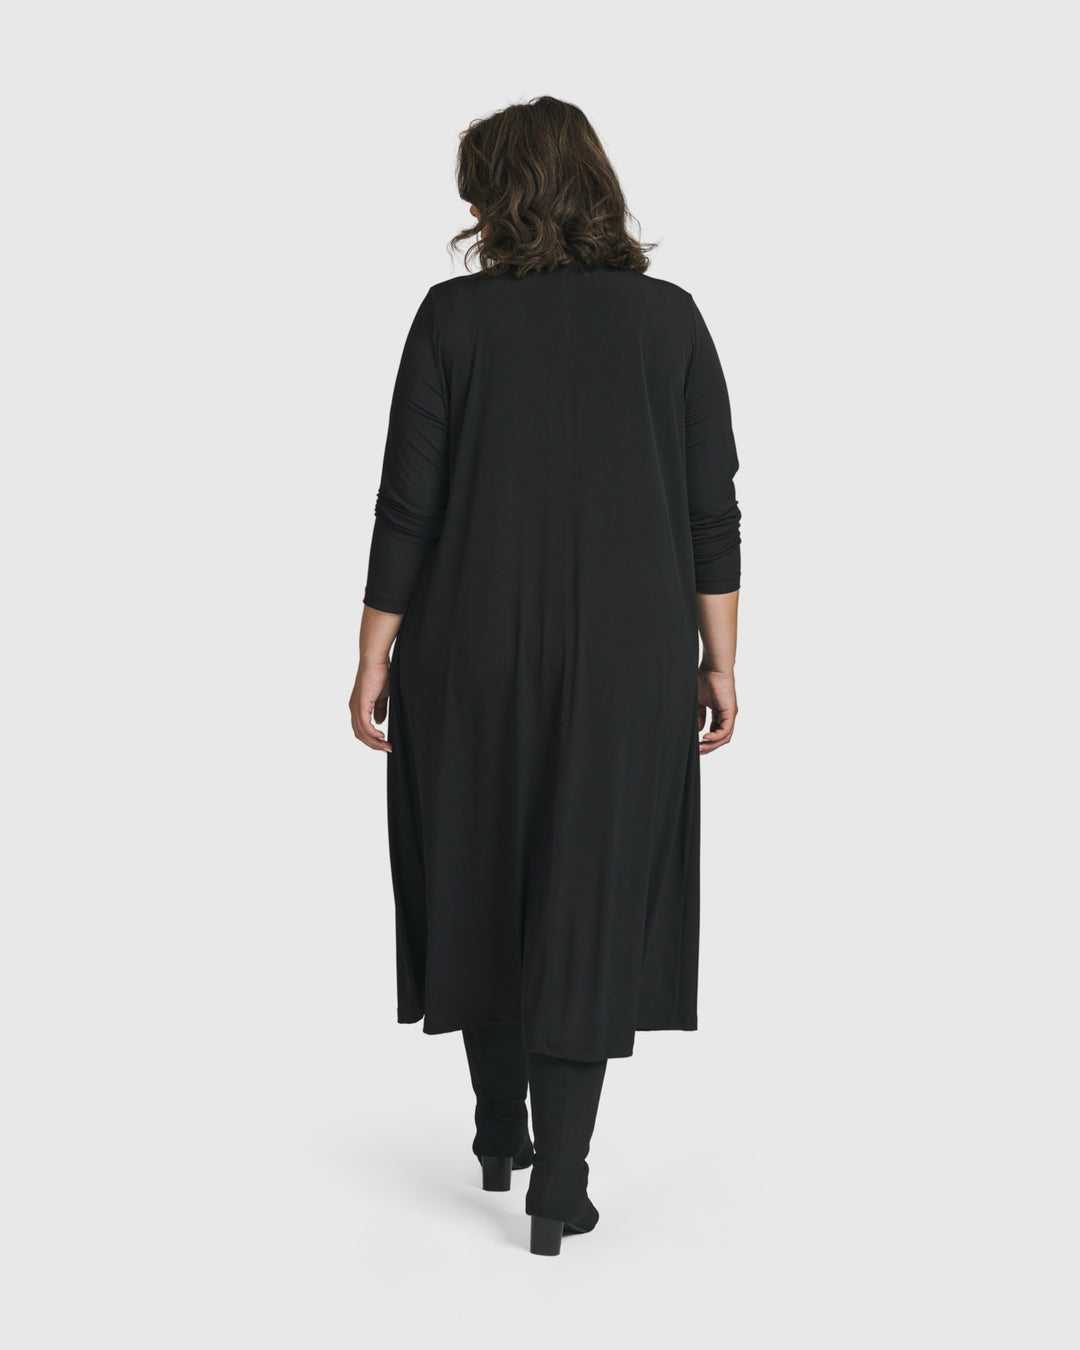 Essential A Line Dress, Black